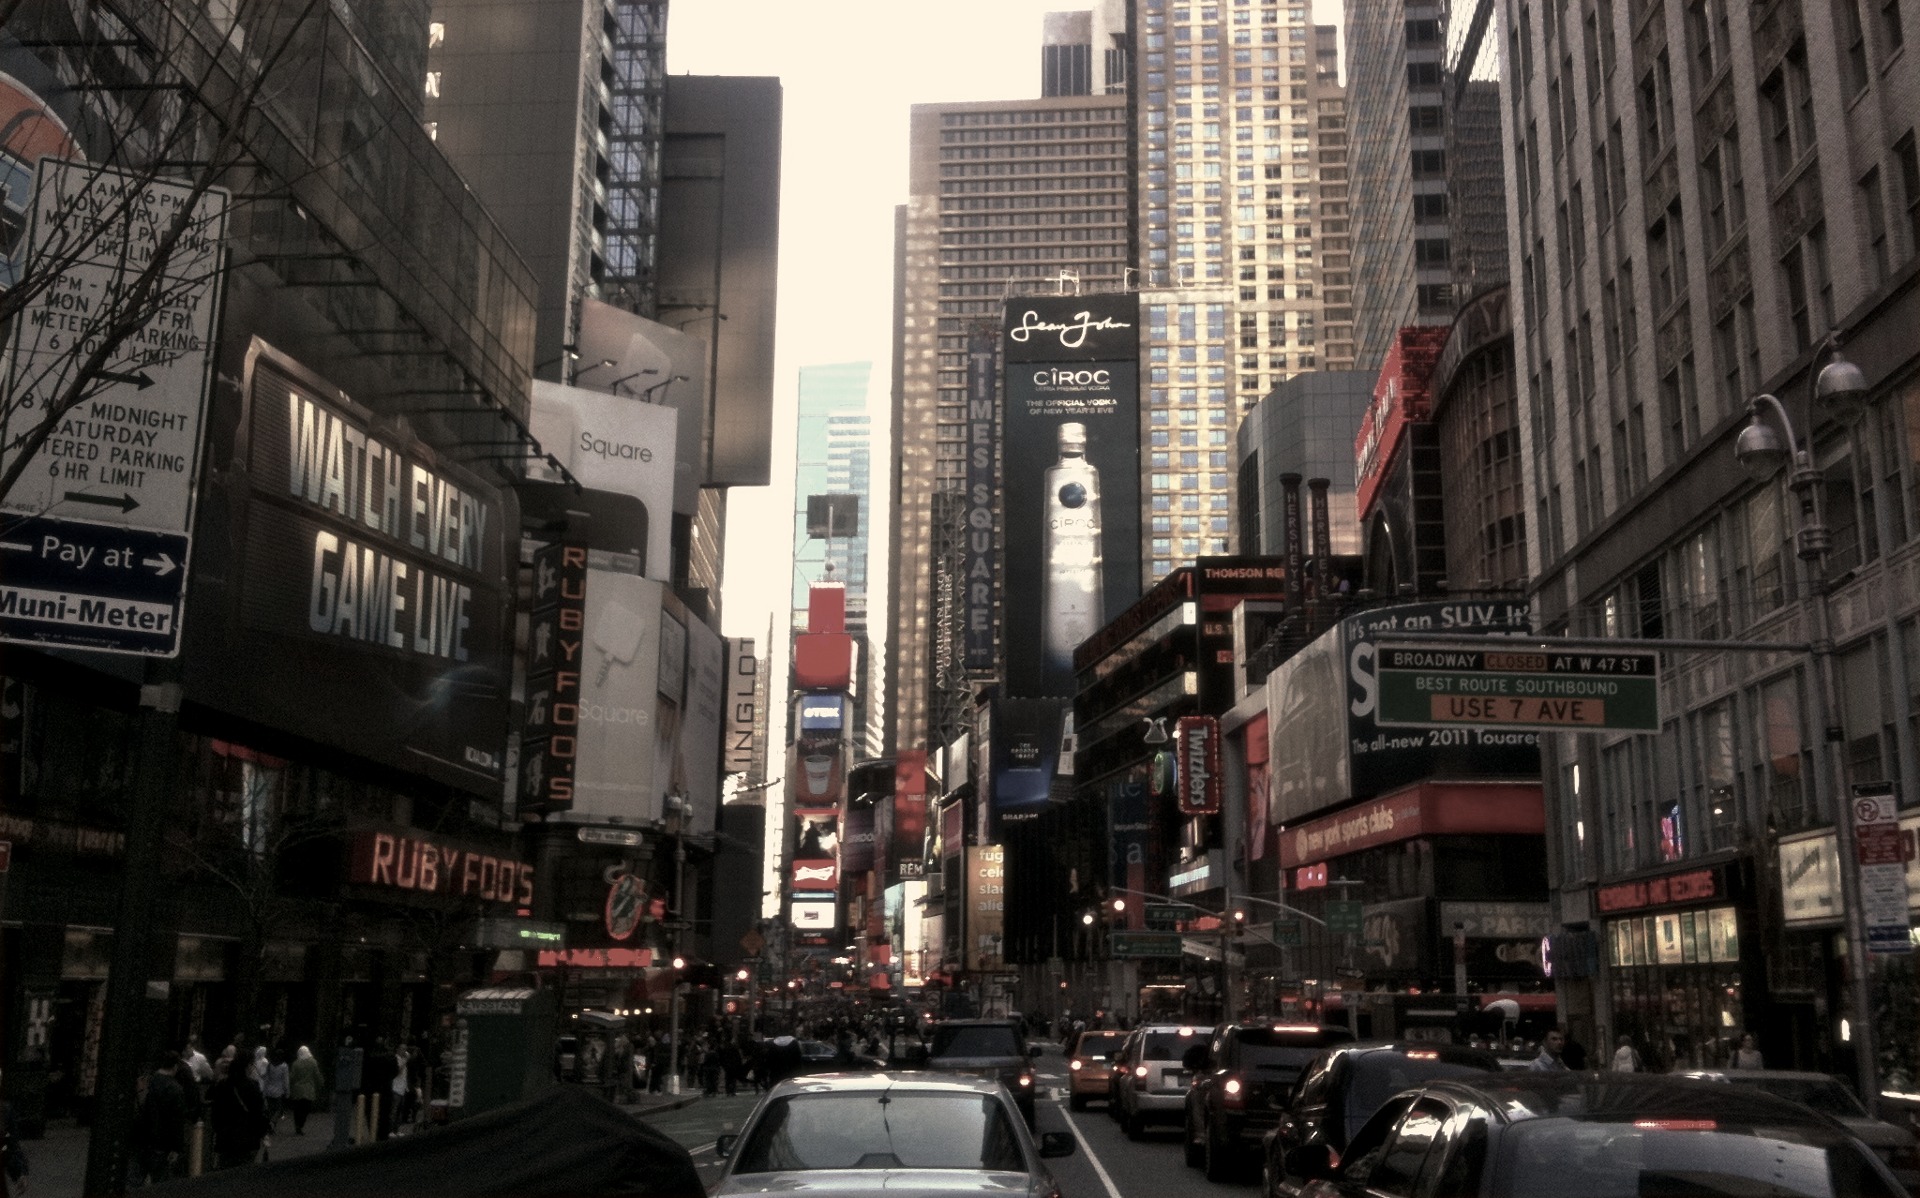 Hình nền New York City HD: Hình nền HD New York City sẽ đưa bạn đến với thế giới ẩm thực đa dạng, mua sắm sôi động và nhịp sống đầy năng lượng của thành phố lớn nhất nước Mỹ. Hãy thưởng thức từng chi tiết thiếu nhi của thành phố qua các bức ảnh chất lượng cao này.